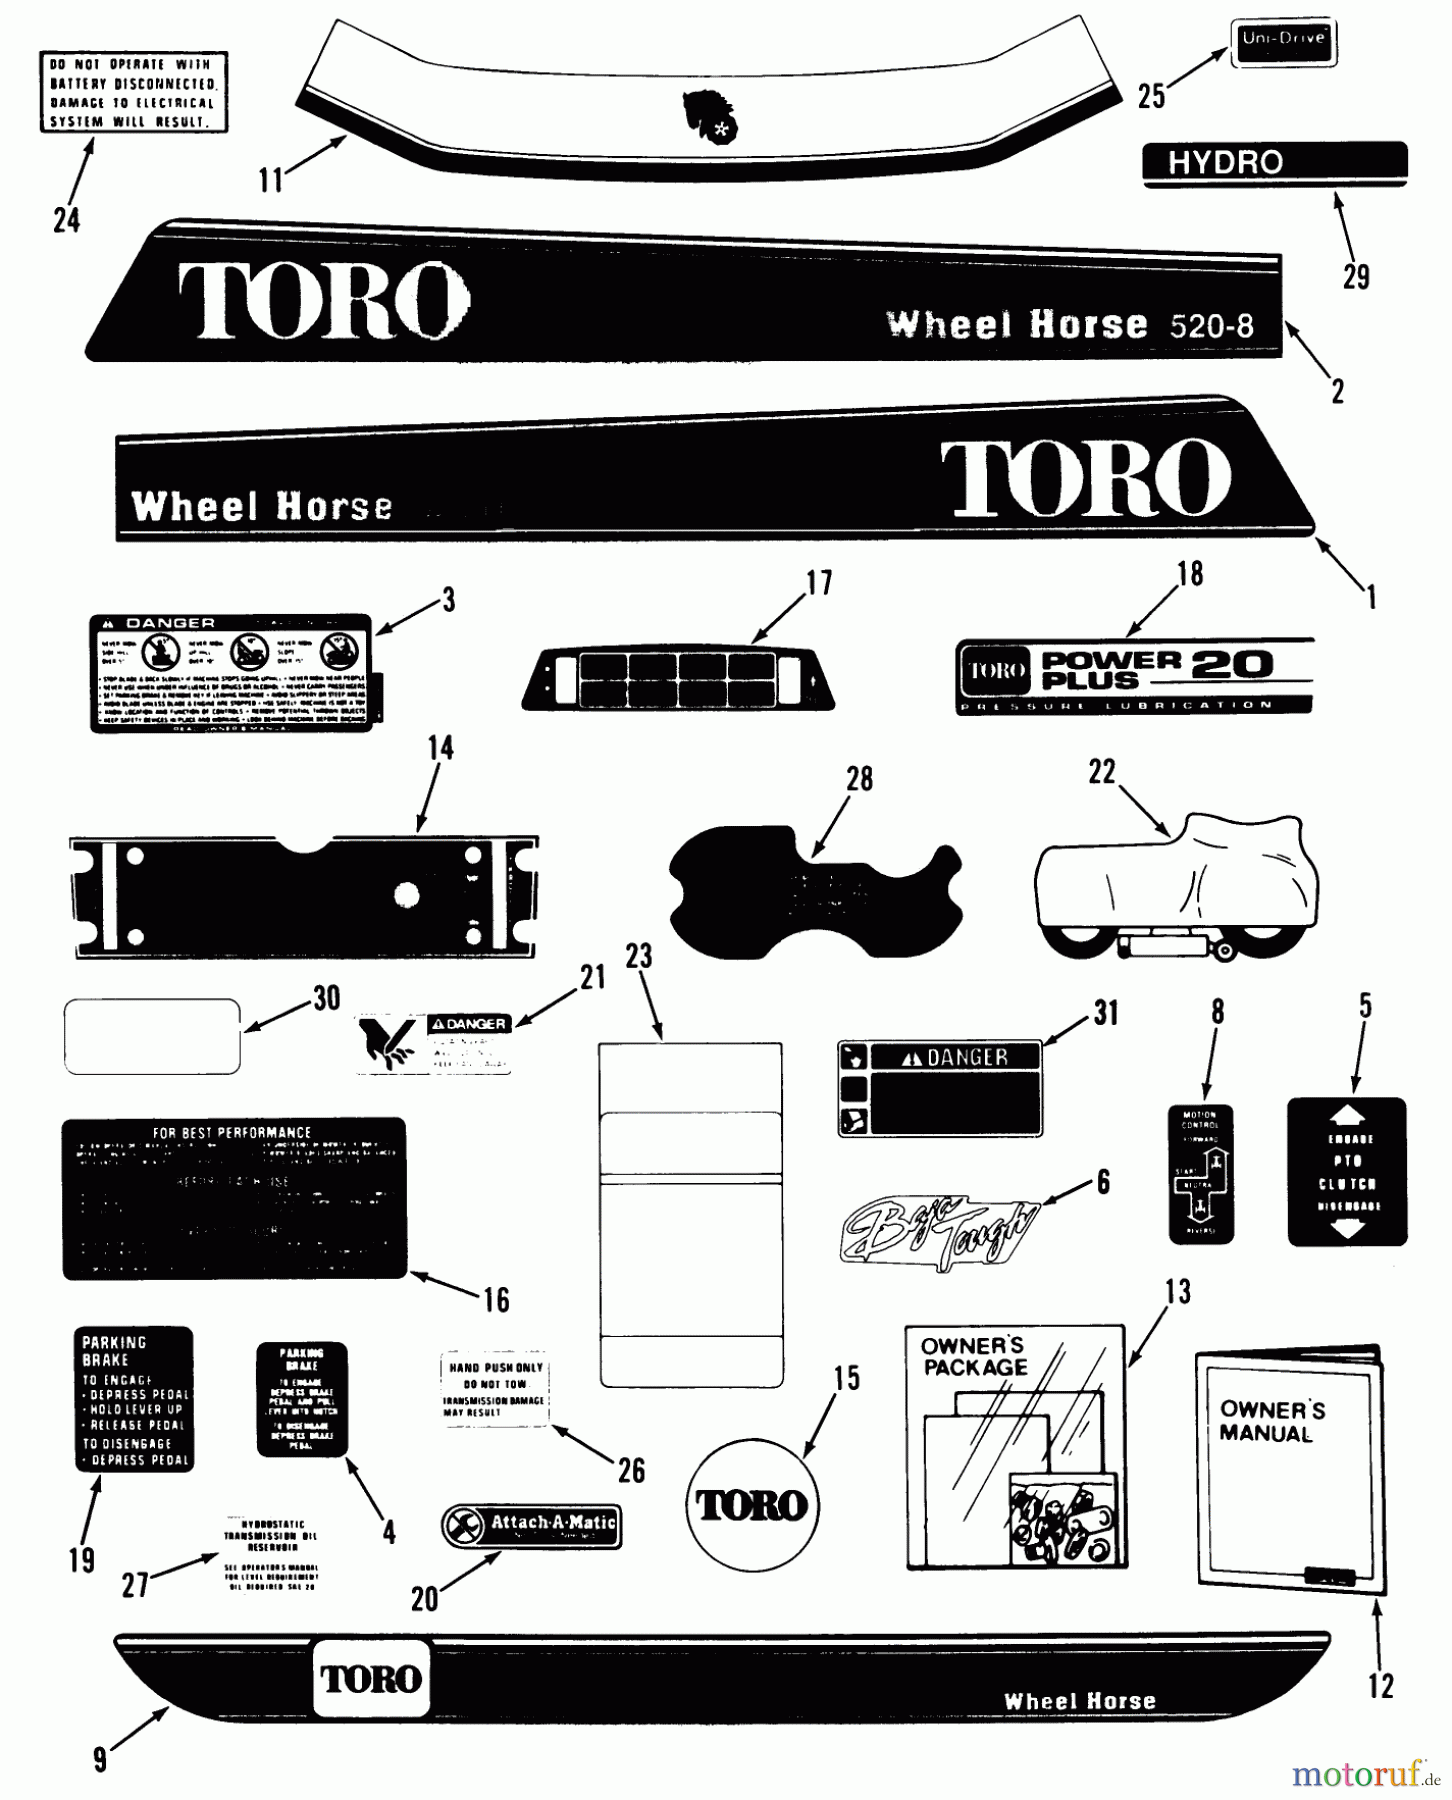  Toro Neu Mowers, Lawn & Garden Tractor Seite 1 41-20OE02 (520-H) - Toro 520-H Garden Tractor, 1991 (1000001-1999999) DECALS